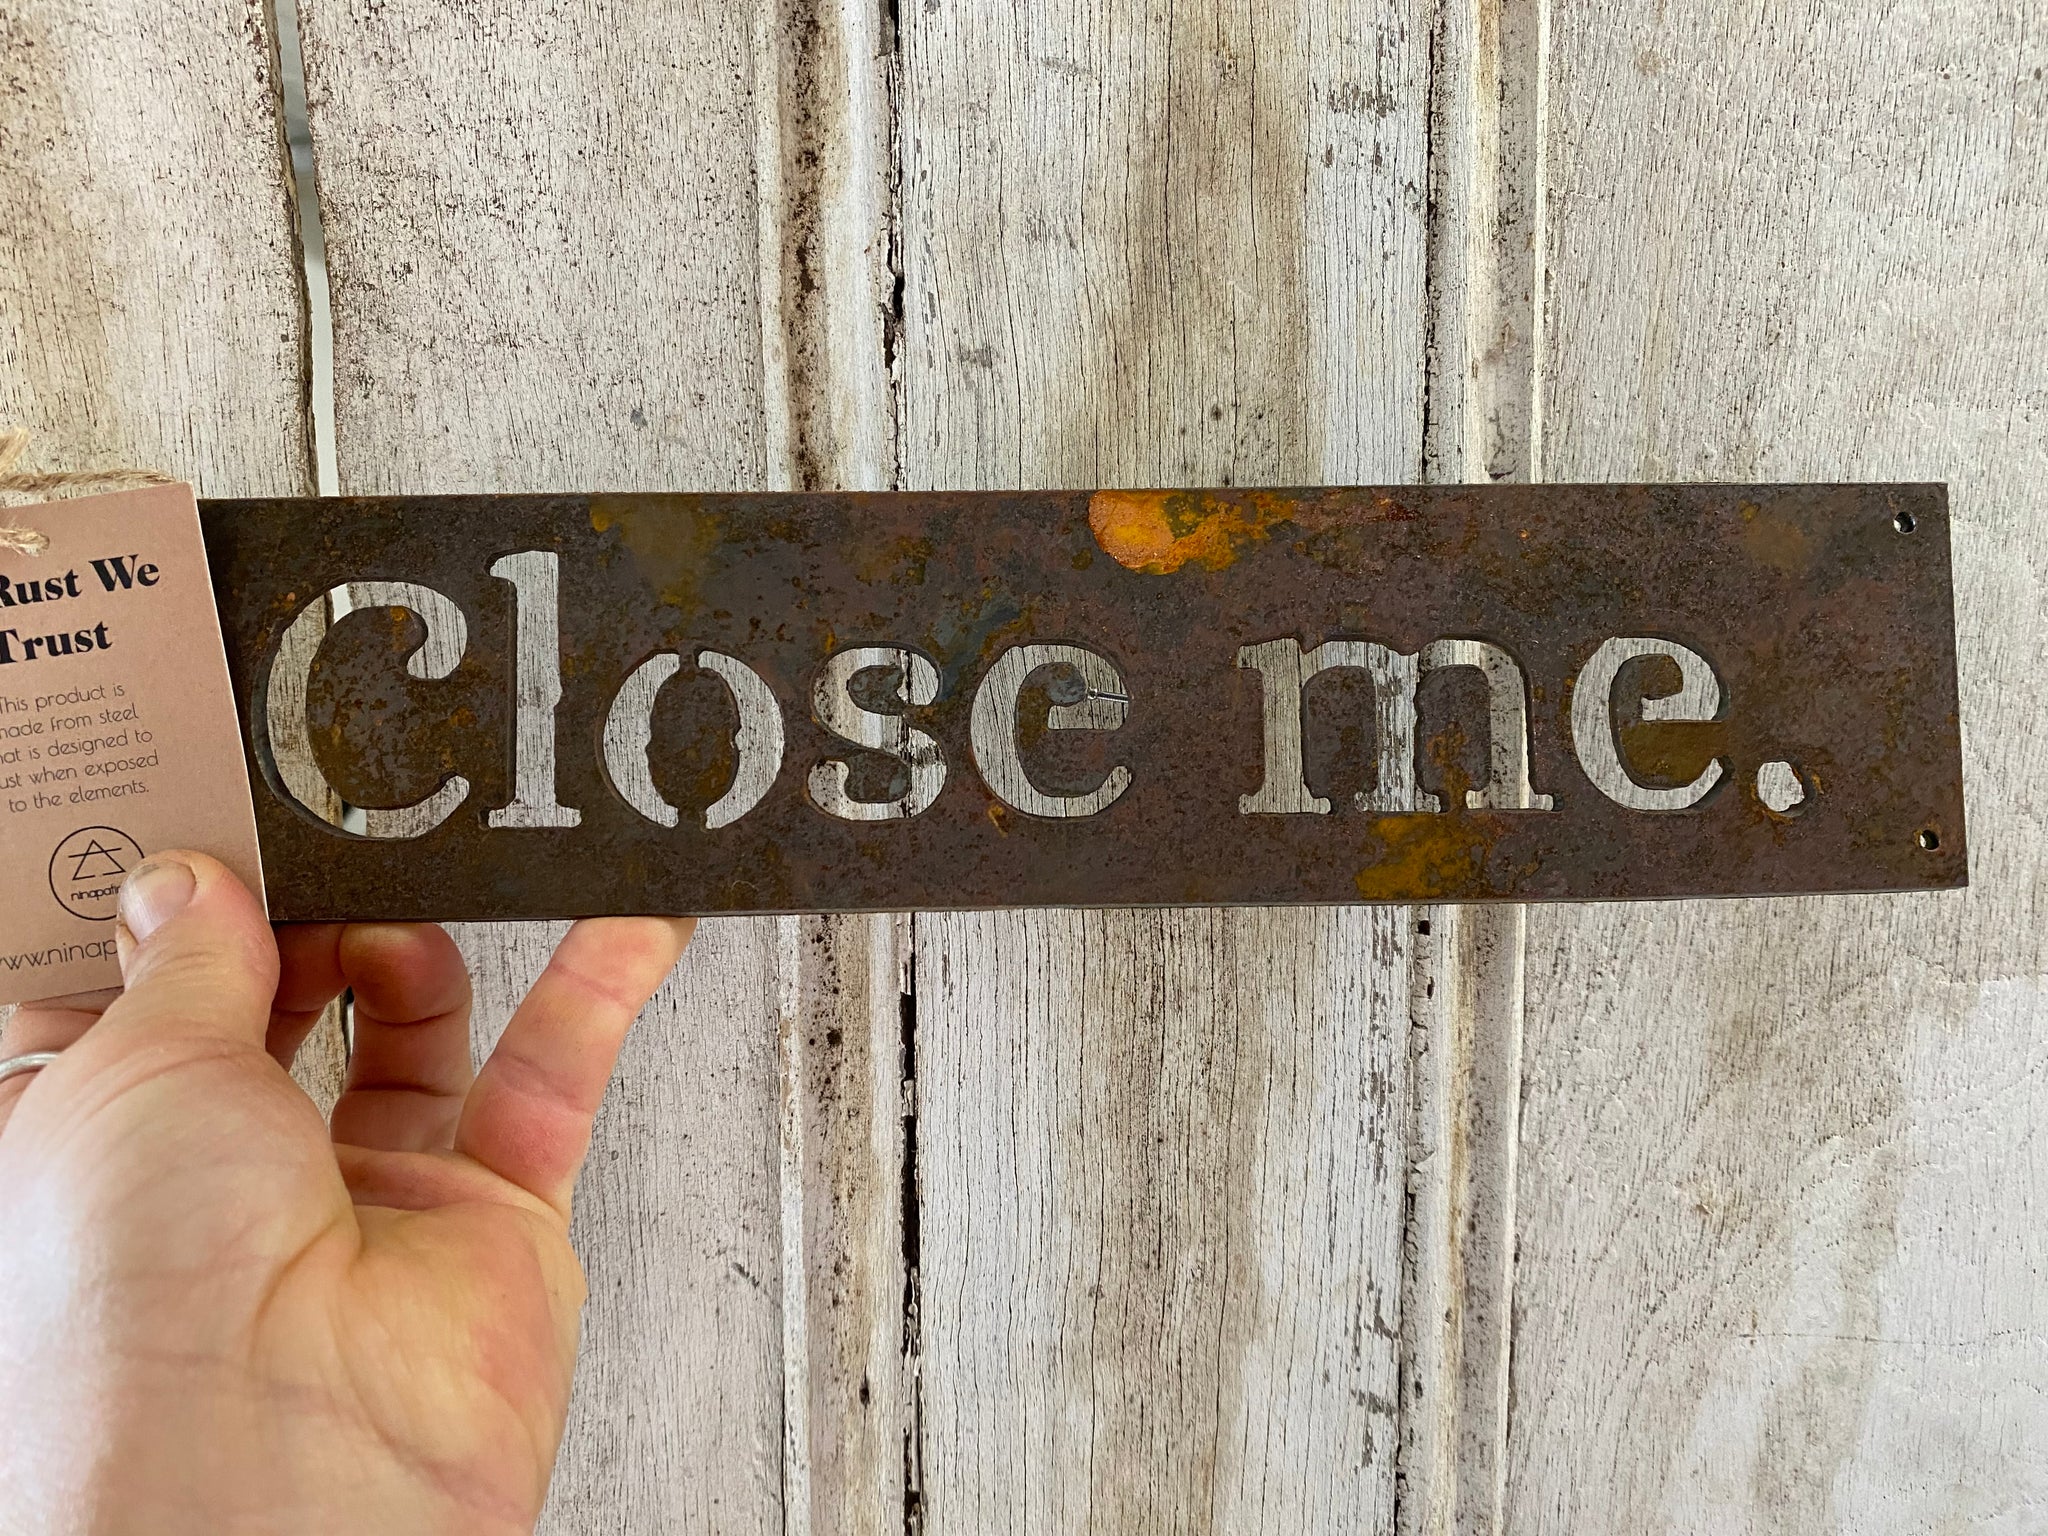 "Close Me" Sign